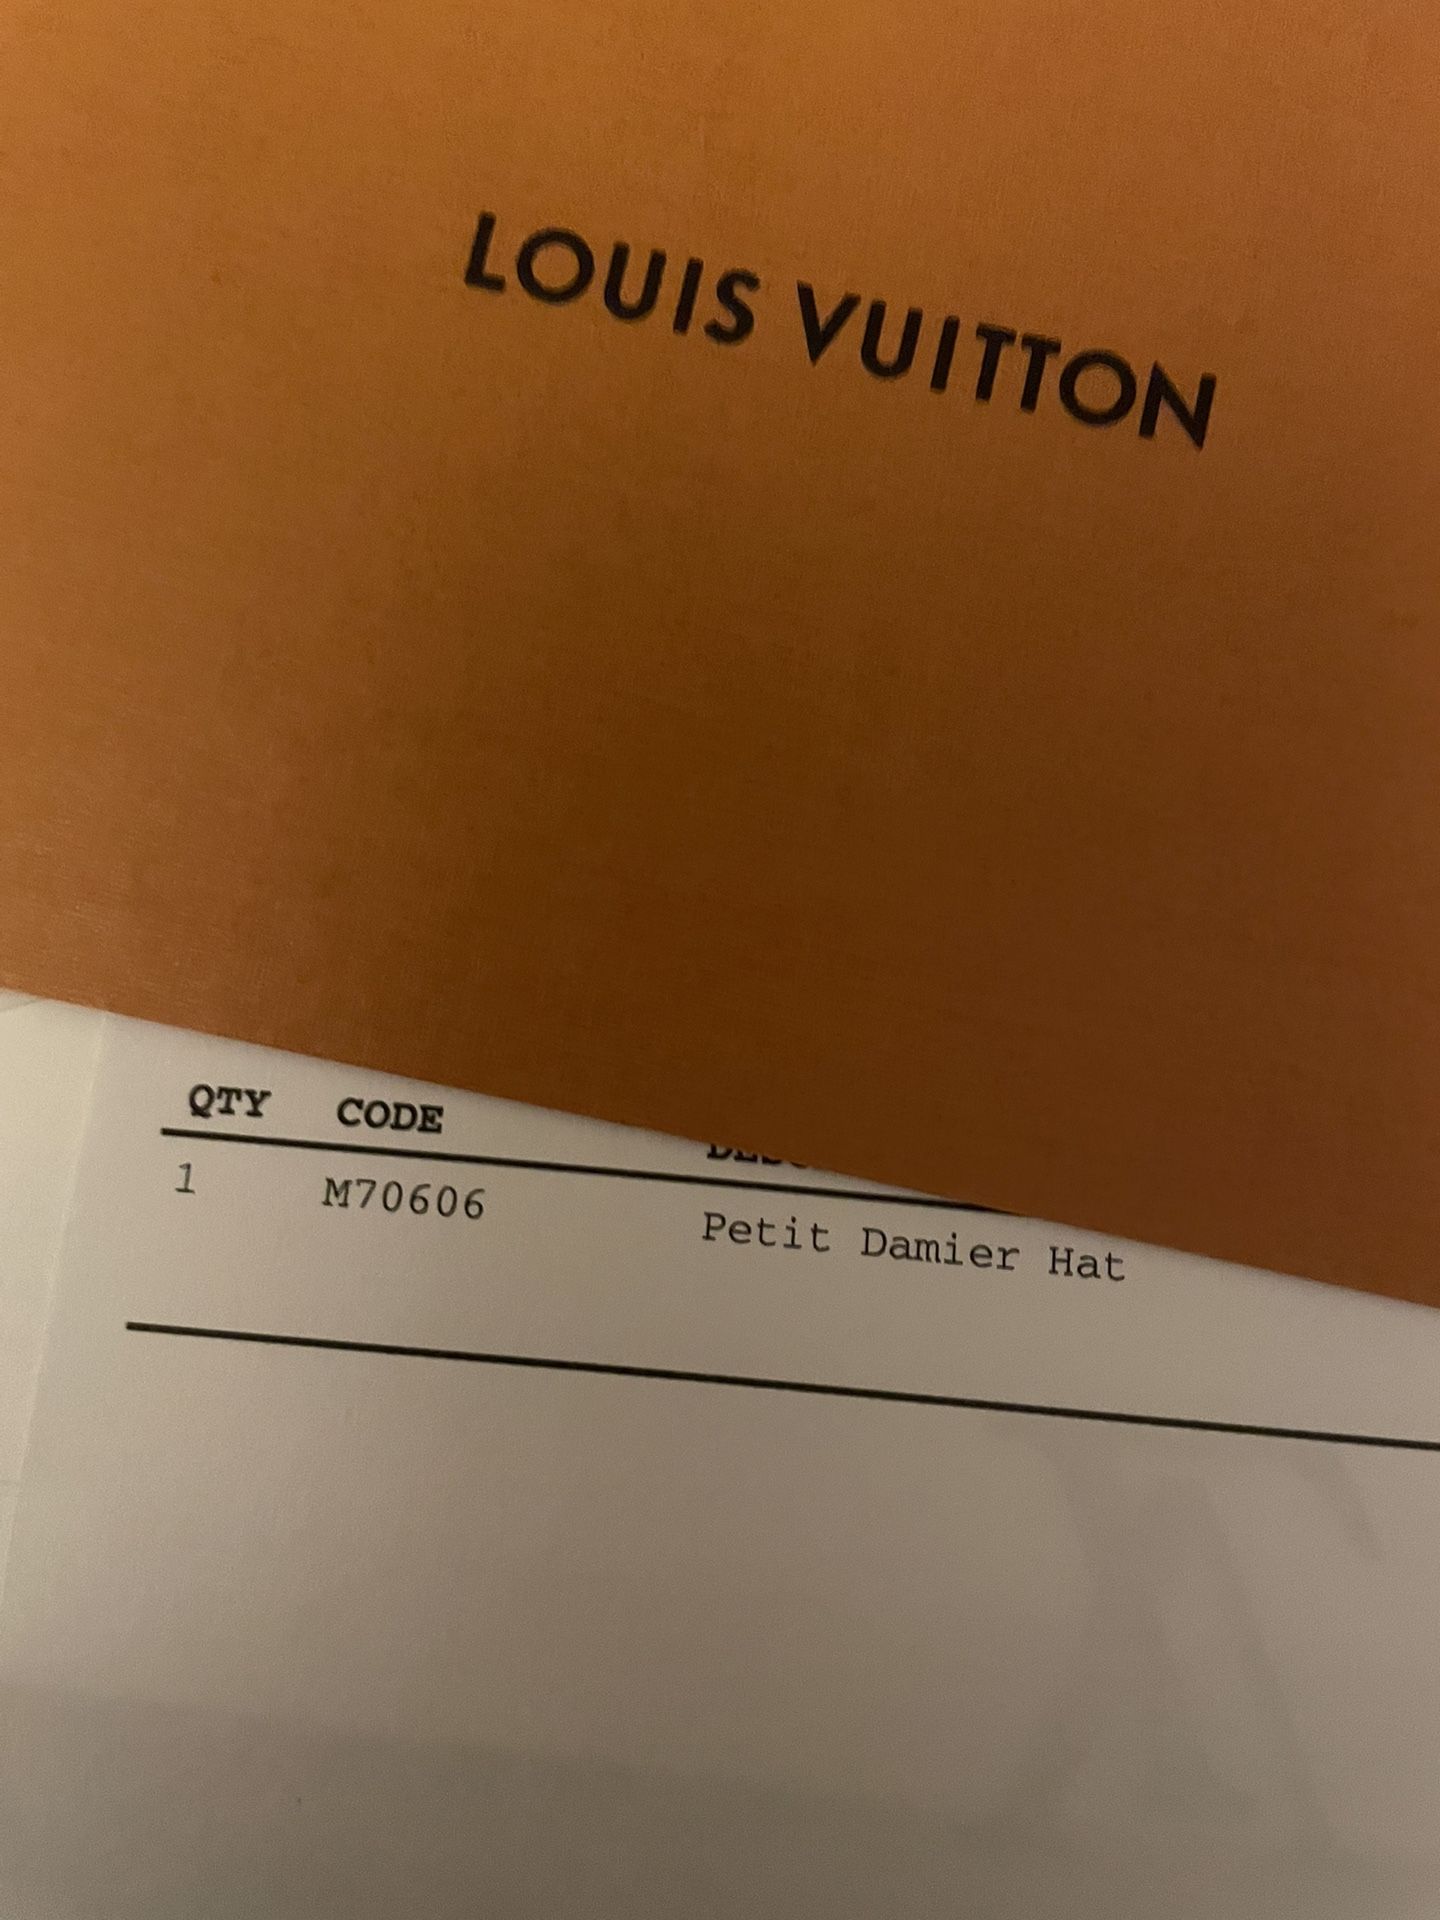 LV mössa, Louis Vuitton petite damier hat